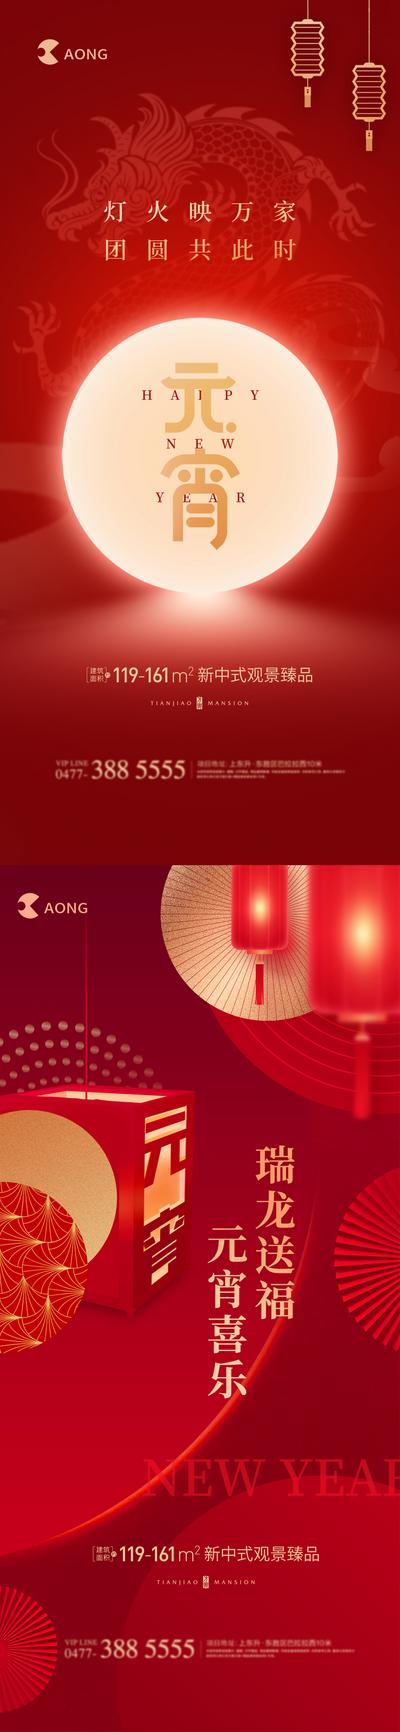 南门网 海报 房地产 中国传统节日 元宵节 灯笼 龙年 系列